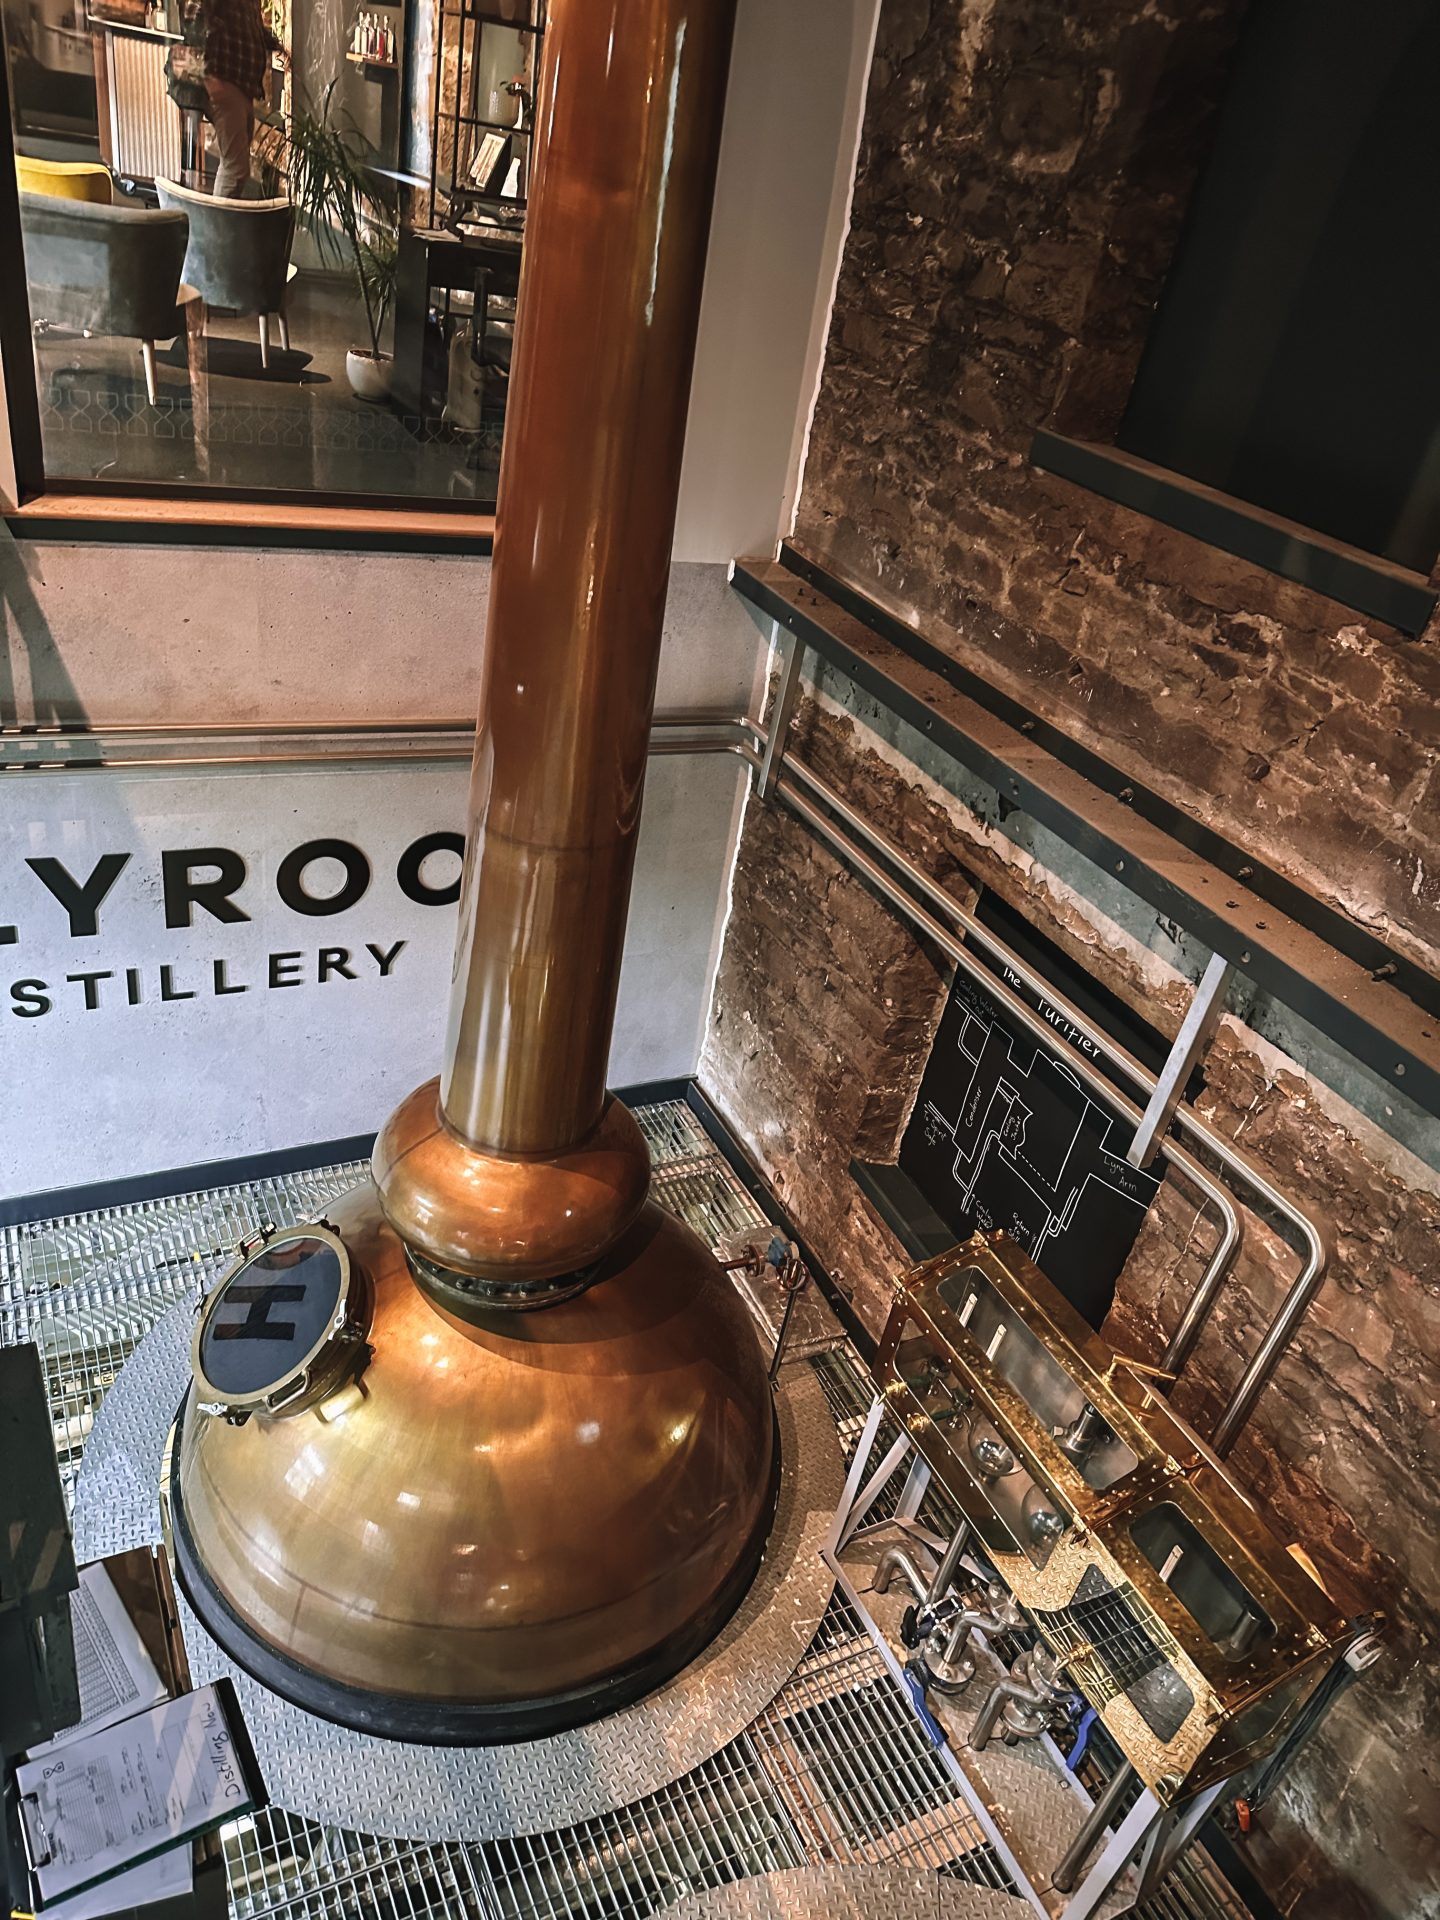 Holyrood Distillery, Edinburgh, Scotland